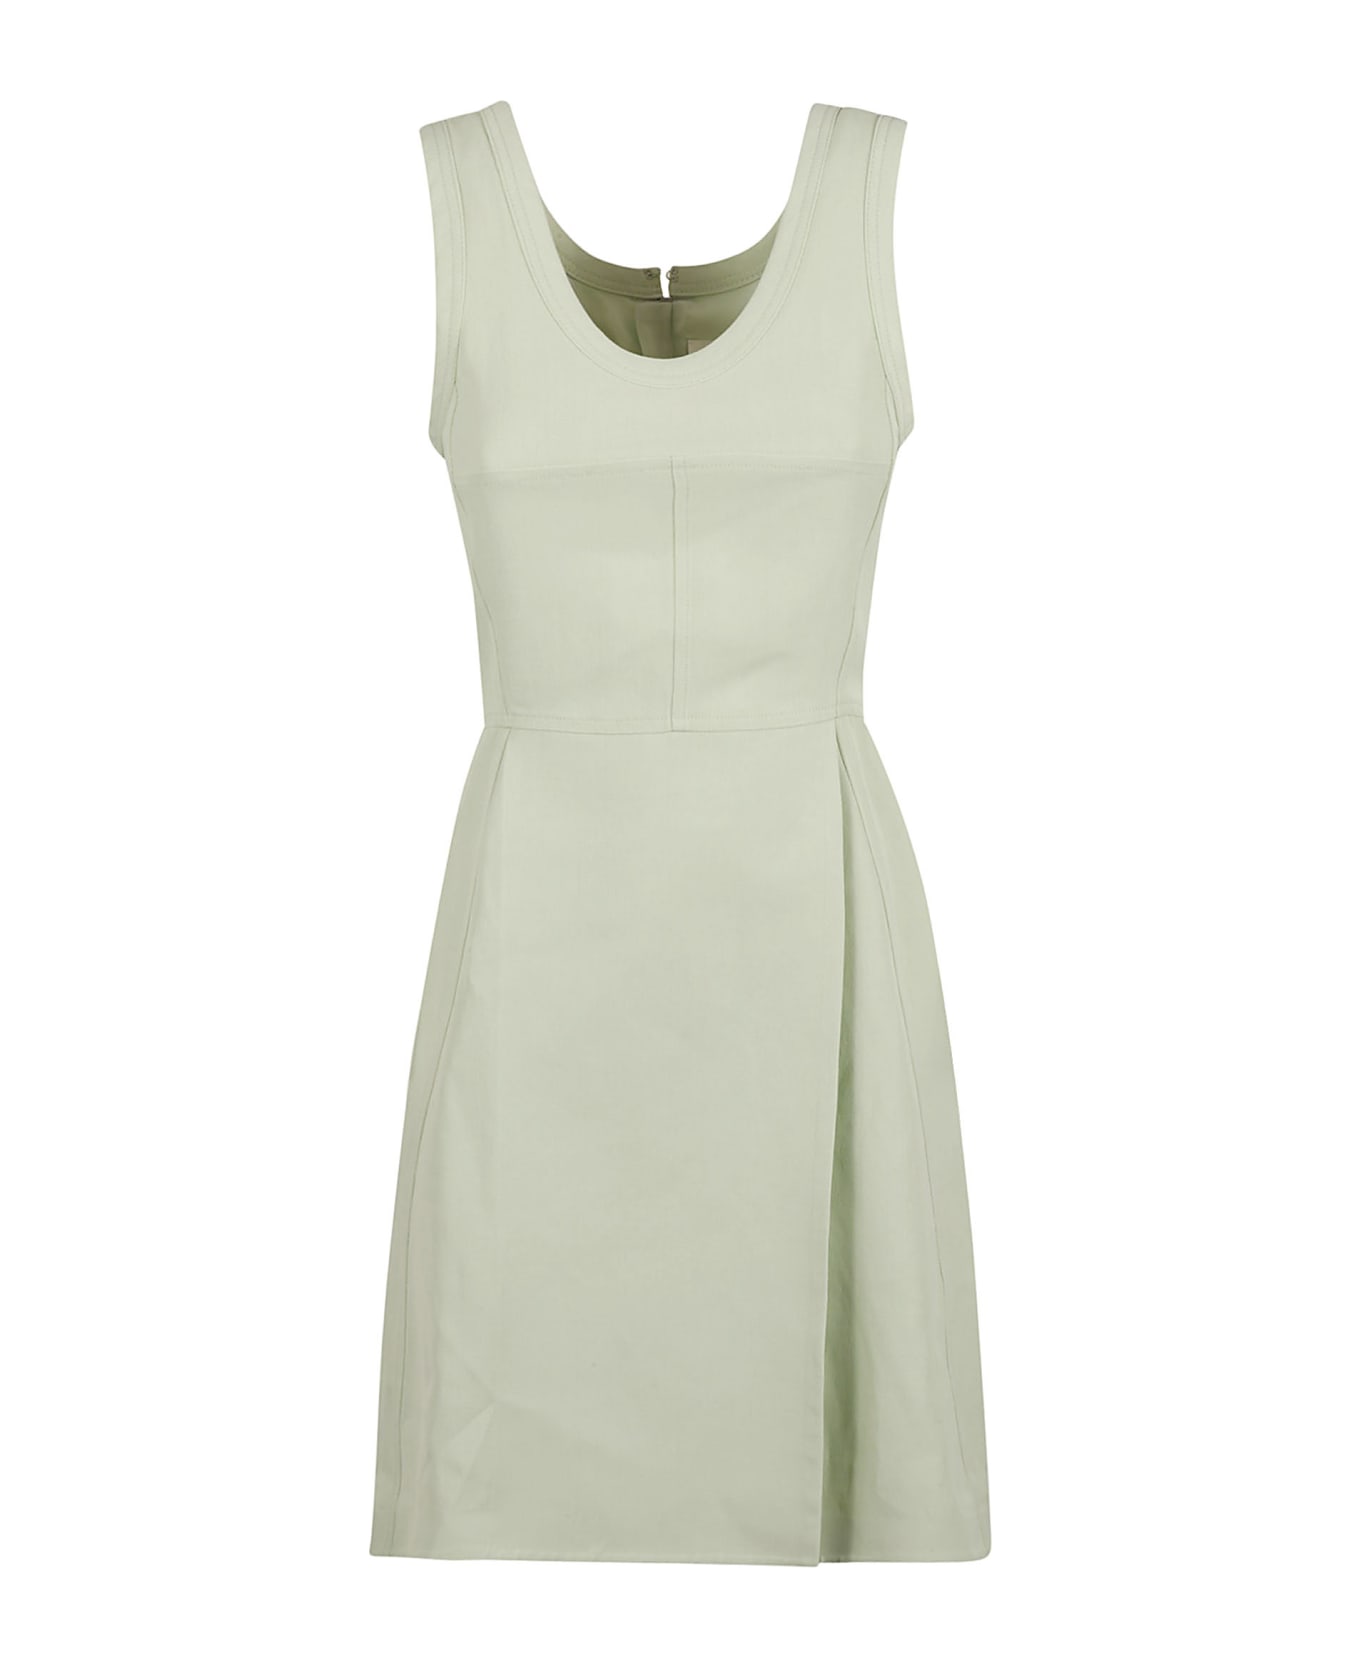 Jil Sander Back Zip Sleeveless Dress - Tea Green